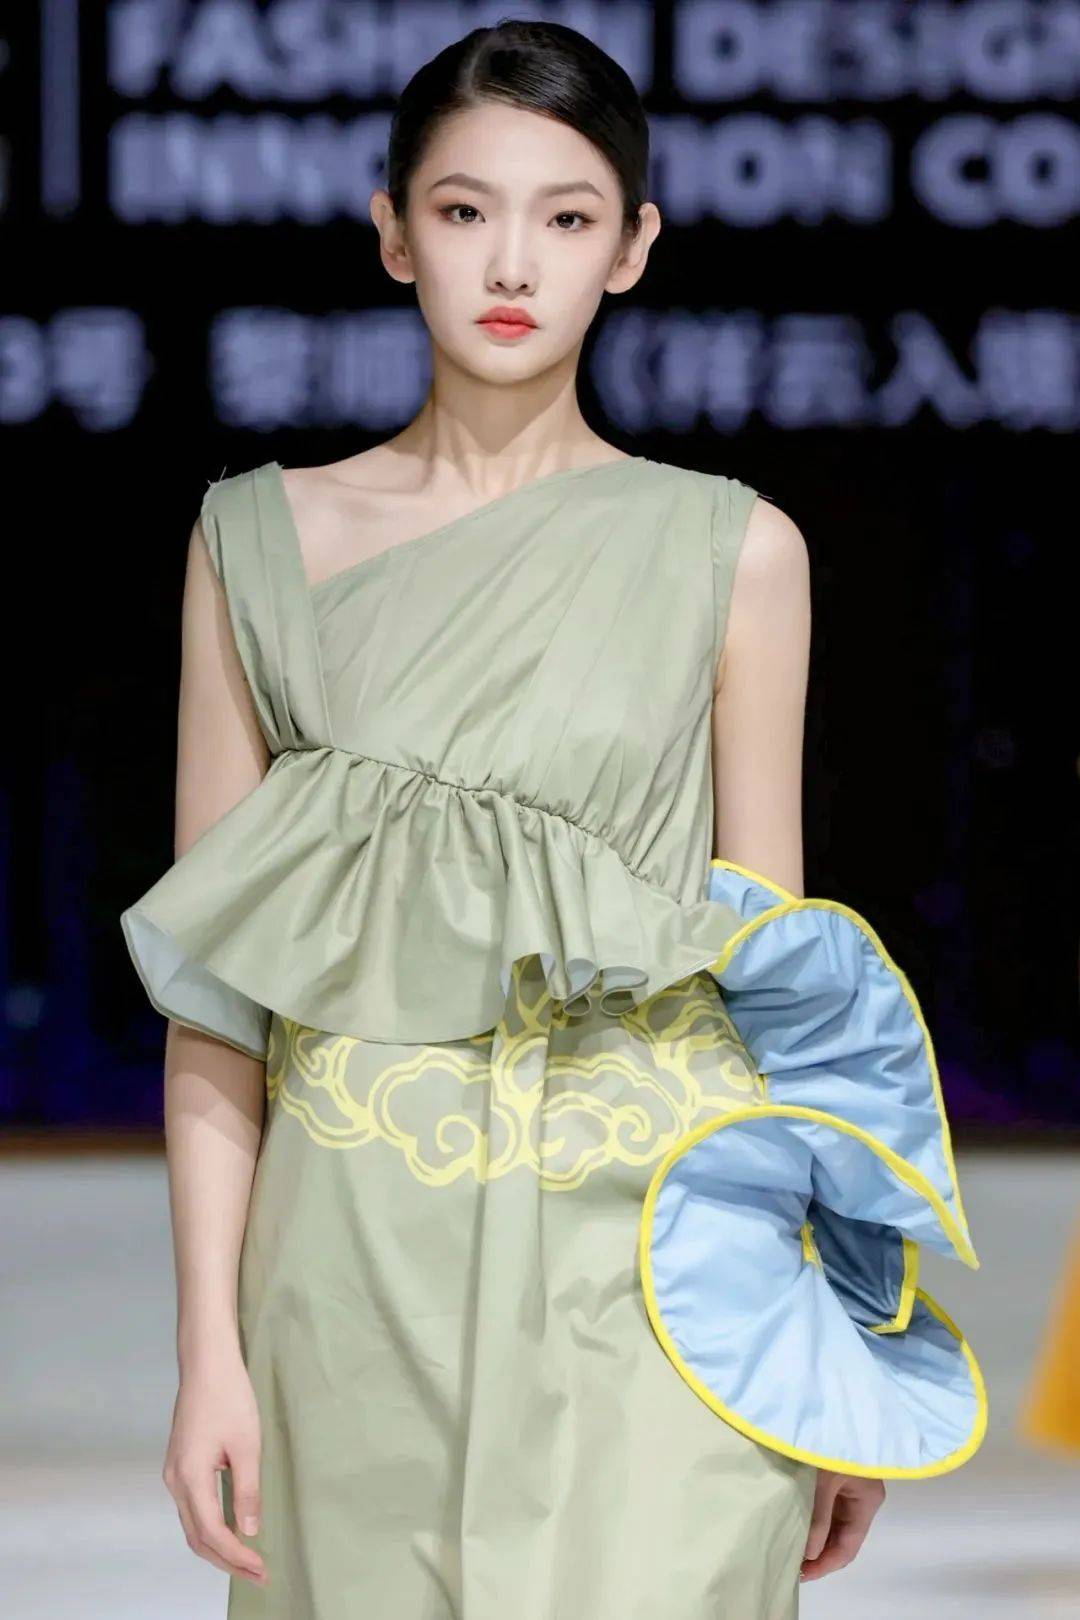 其他获奖选手北京新面孔模特学校217期服装表演专业艺考班时装模特